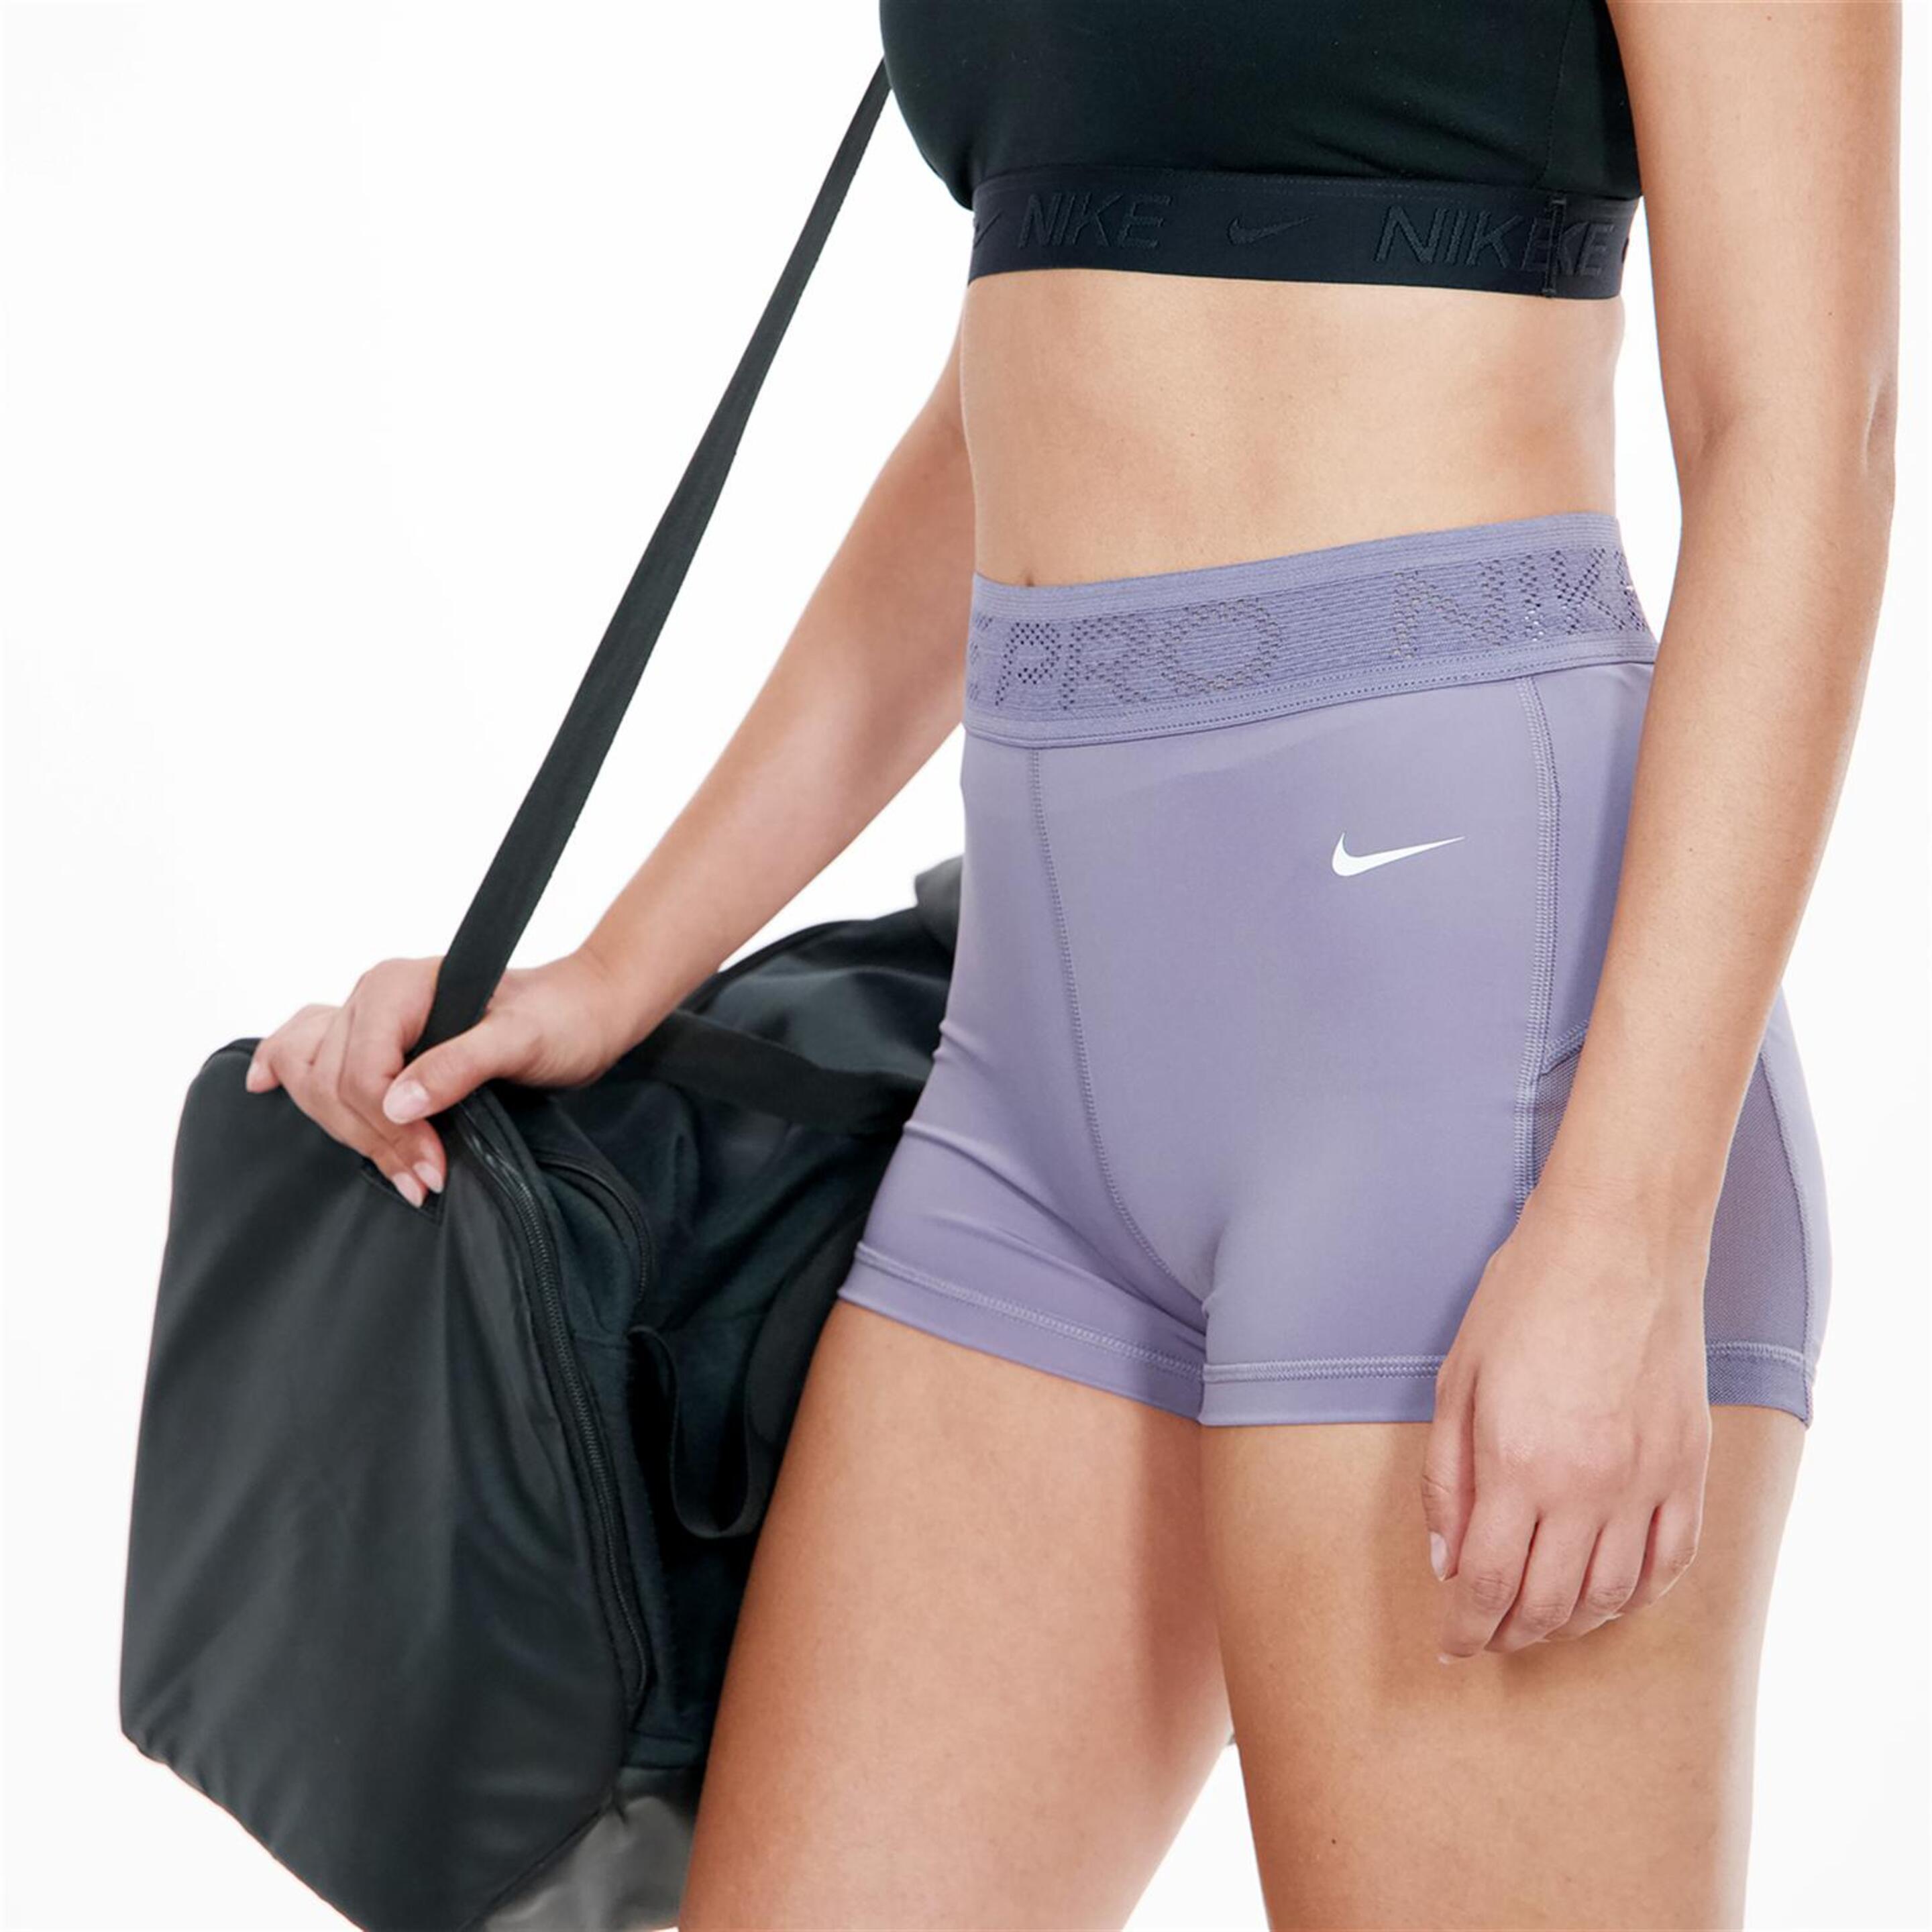 Nike 365 Mesh 3" - morado - Leggings Transparencias Mujer